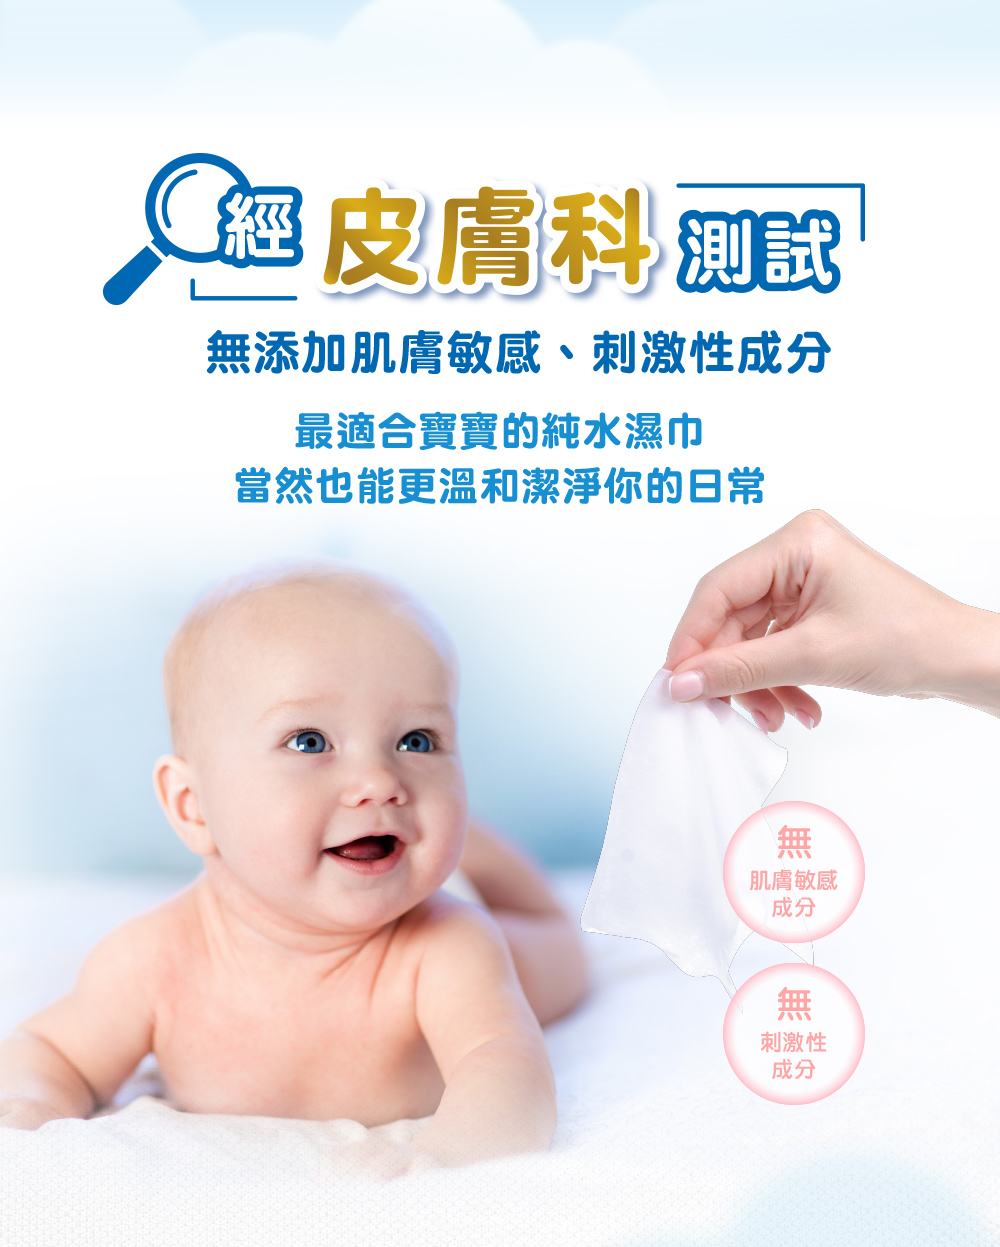 【好奇】純水嬰兒濕巾天然植萃FG厚型90抽x18包 送贈品